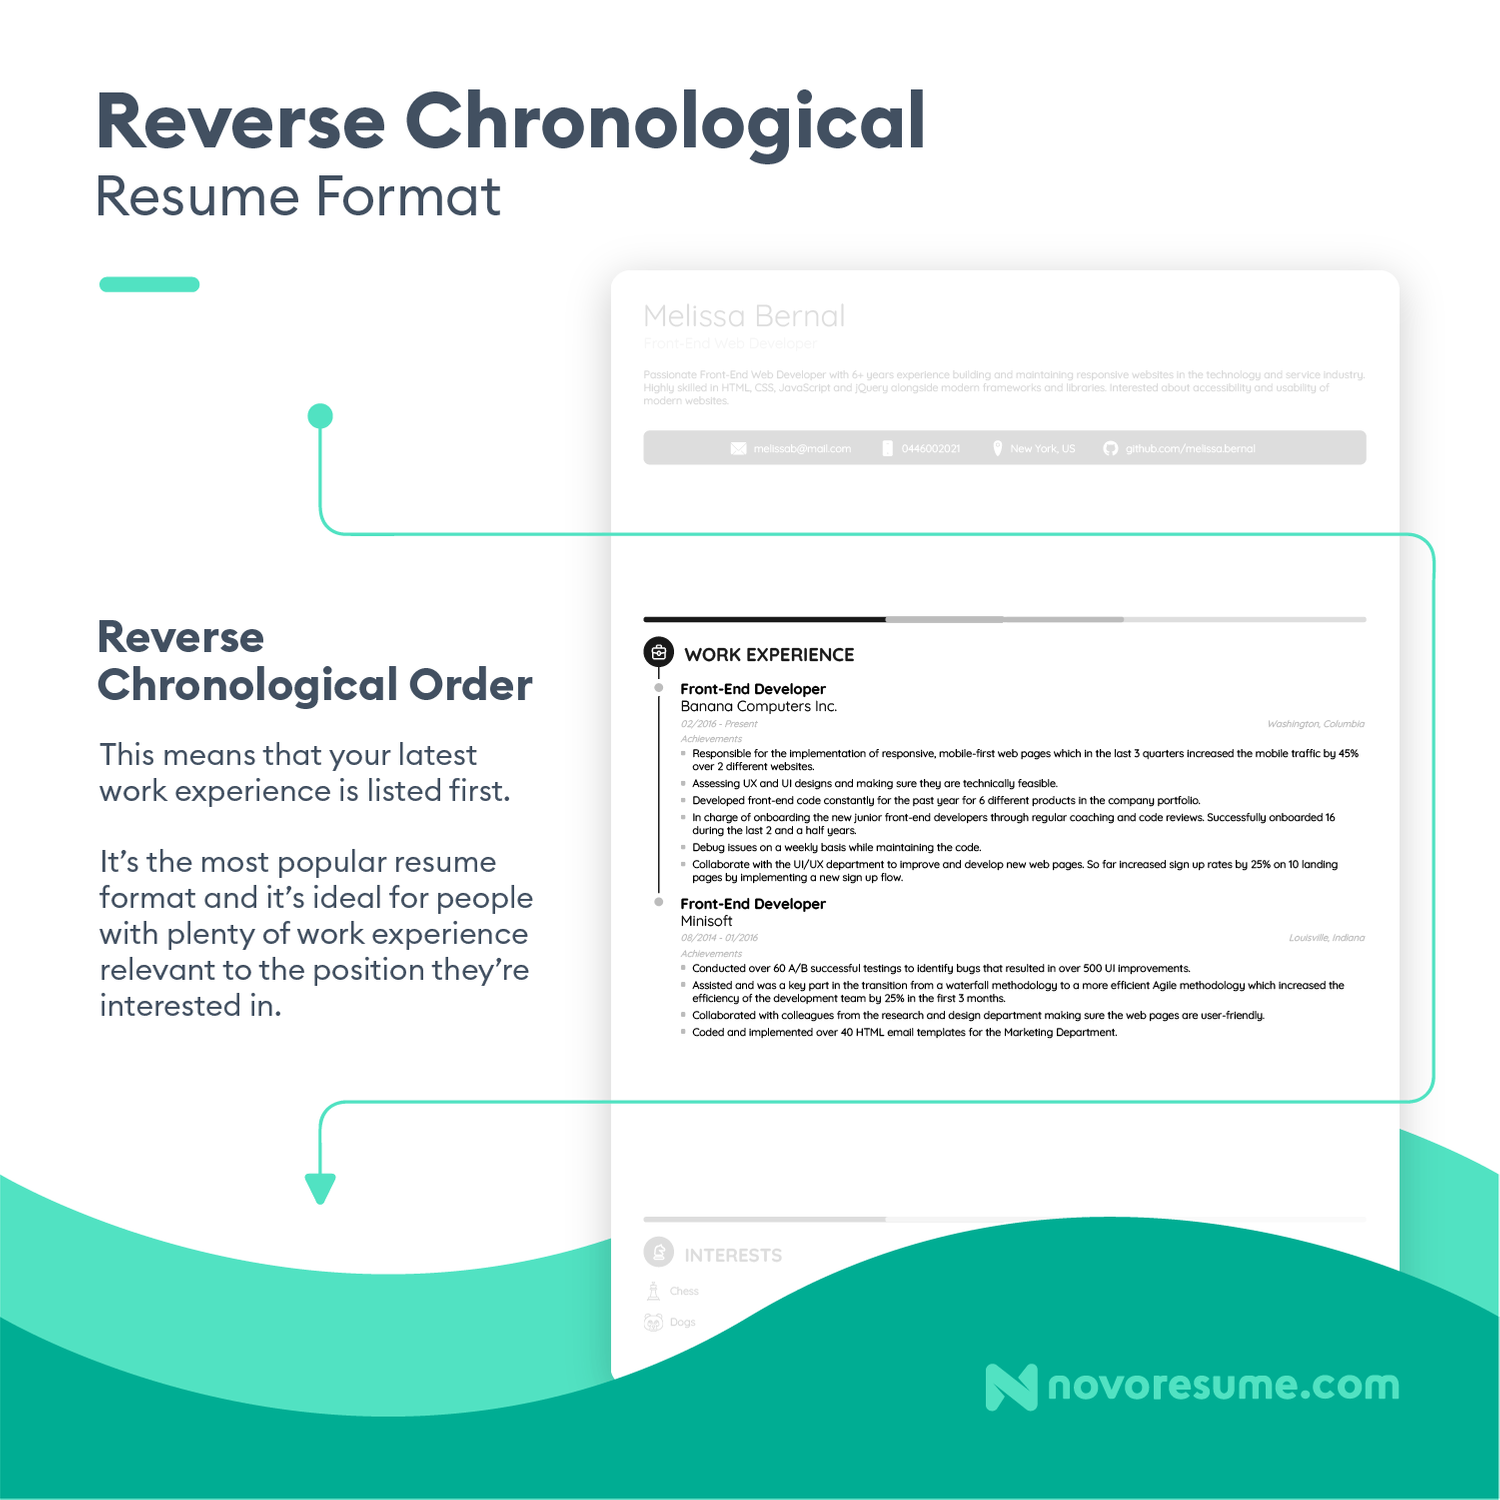 reverse-chronological-resume-format